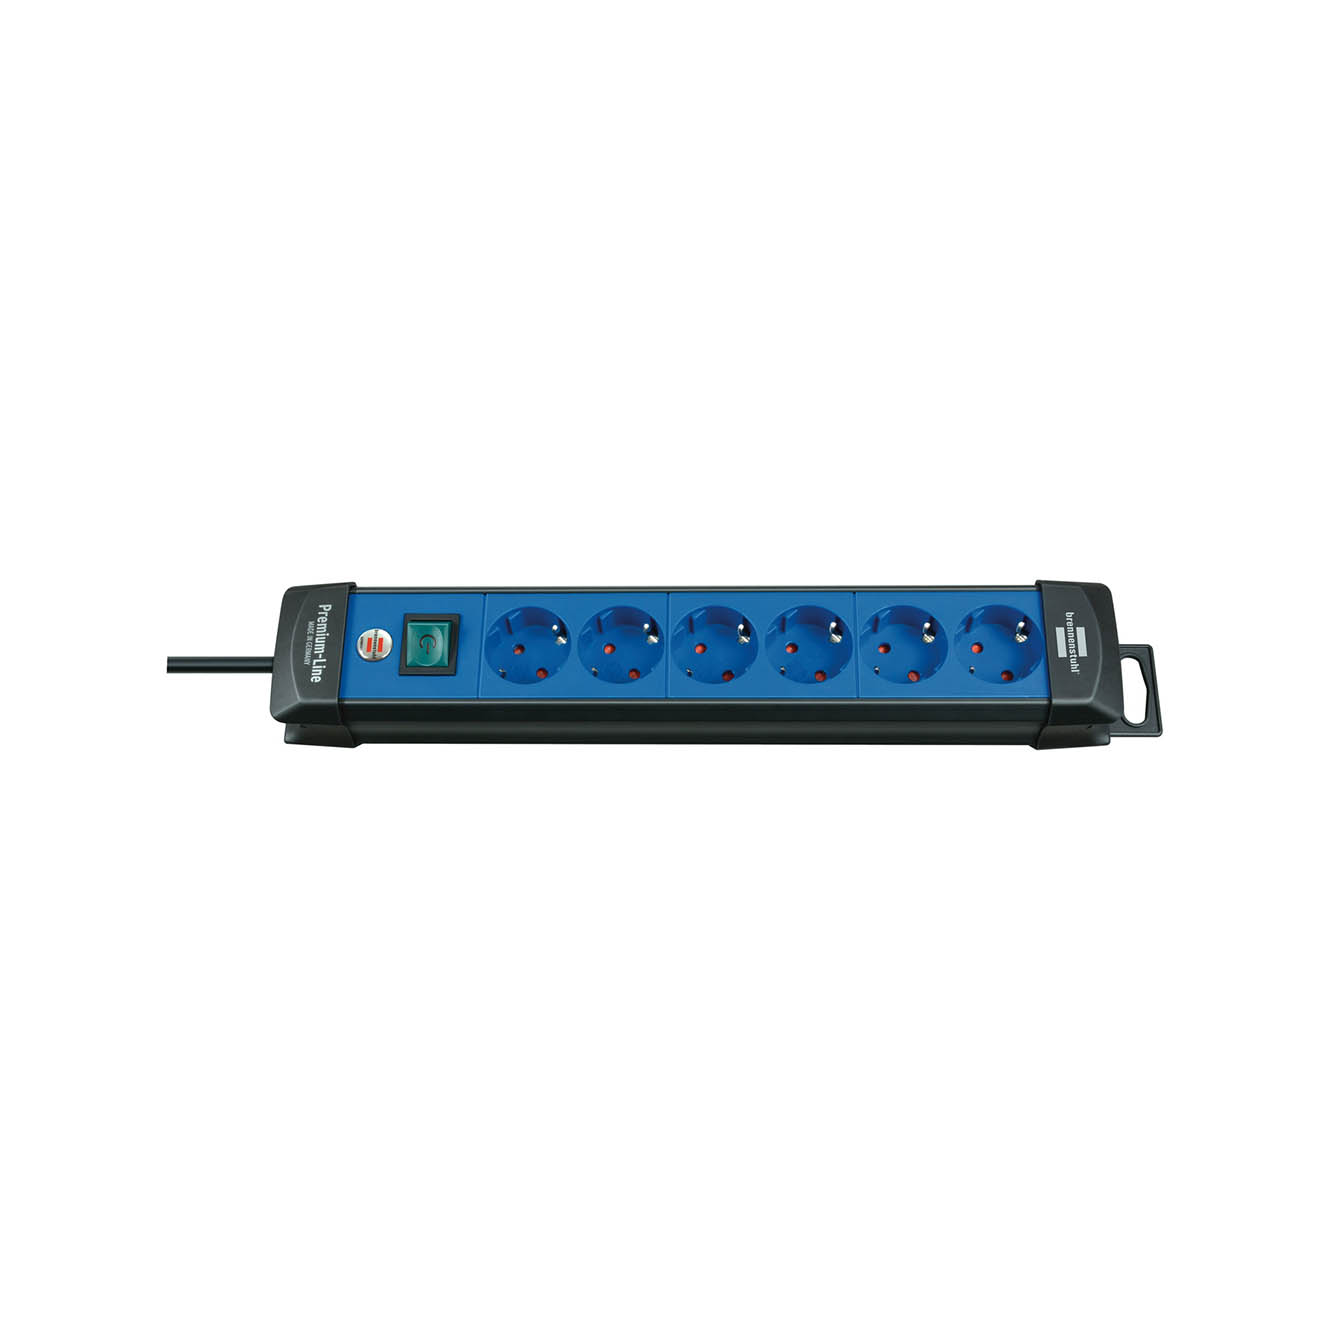 Удлинитель Brennenstuhl Premium-Line 6 розеток кабель 3 м H05VV-F 3G1,5 черный/синий 1951360100